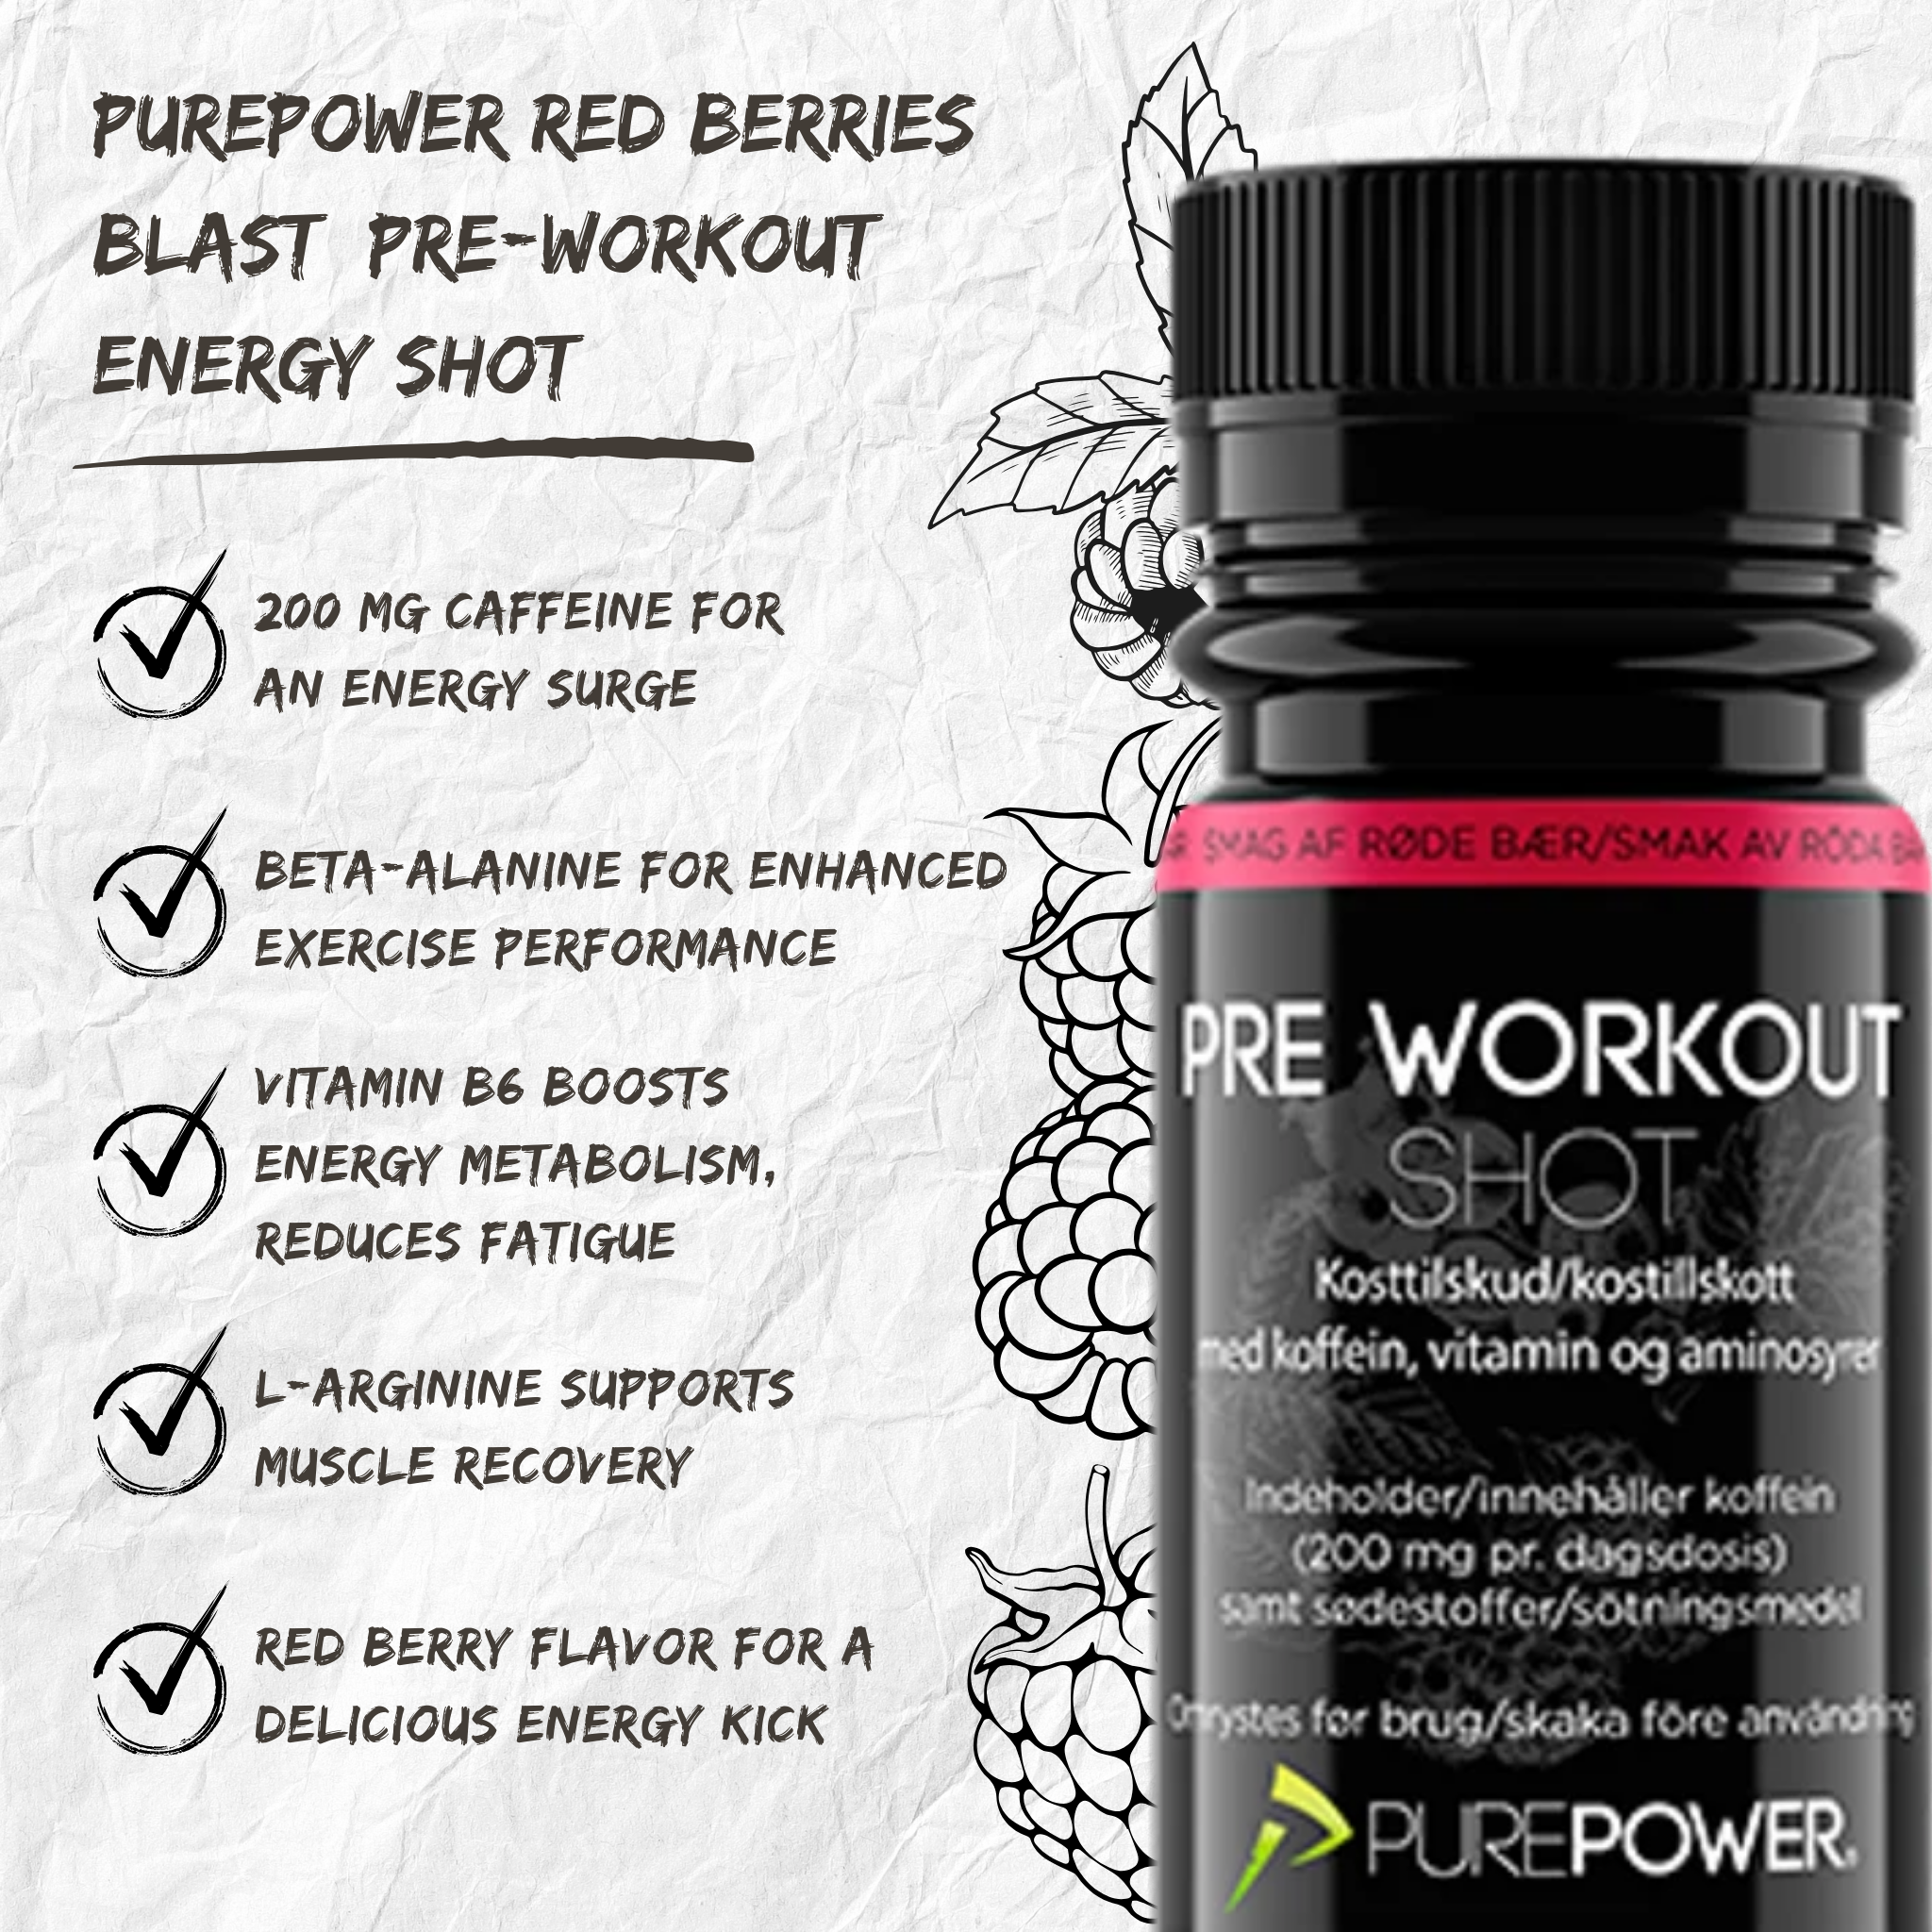 PurePower Energidrik Pre Workout Shot Redberry med Koffein (60ml)